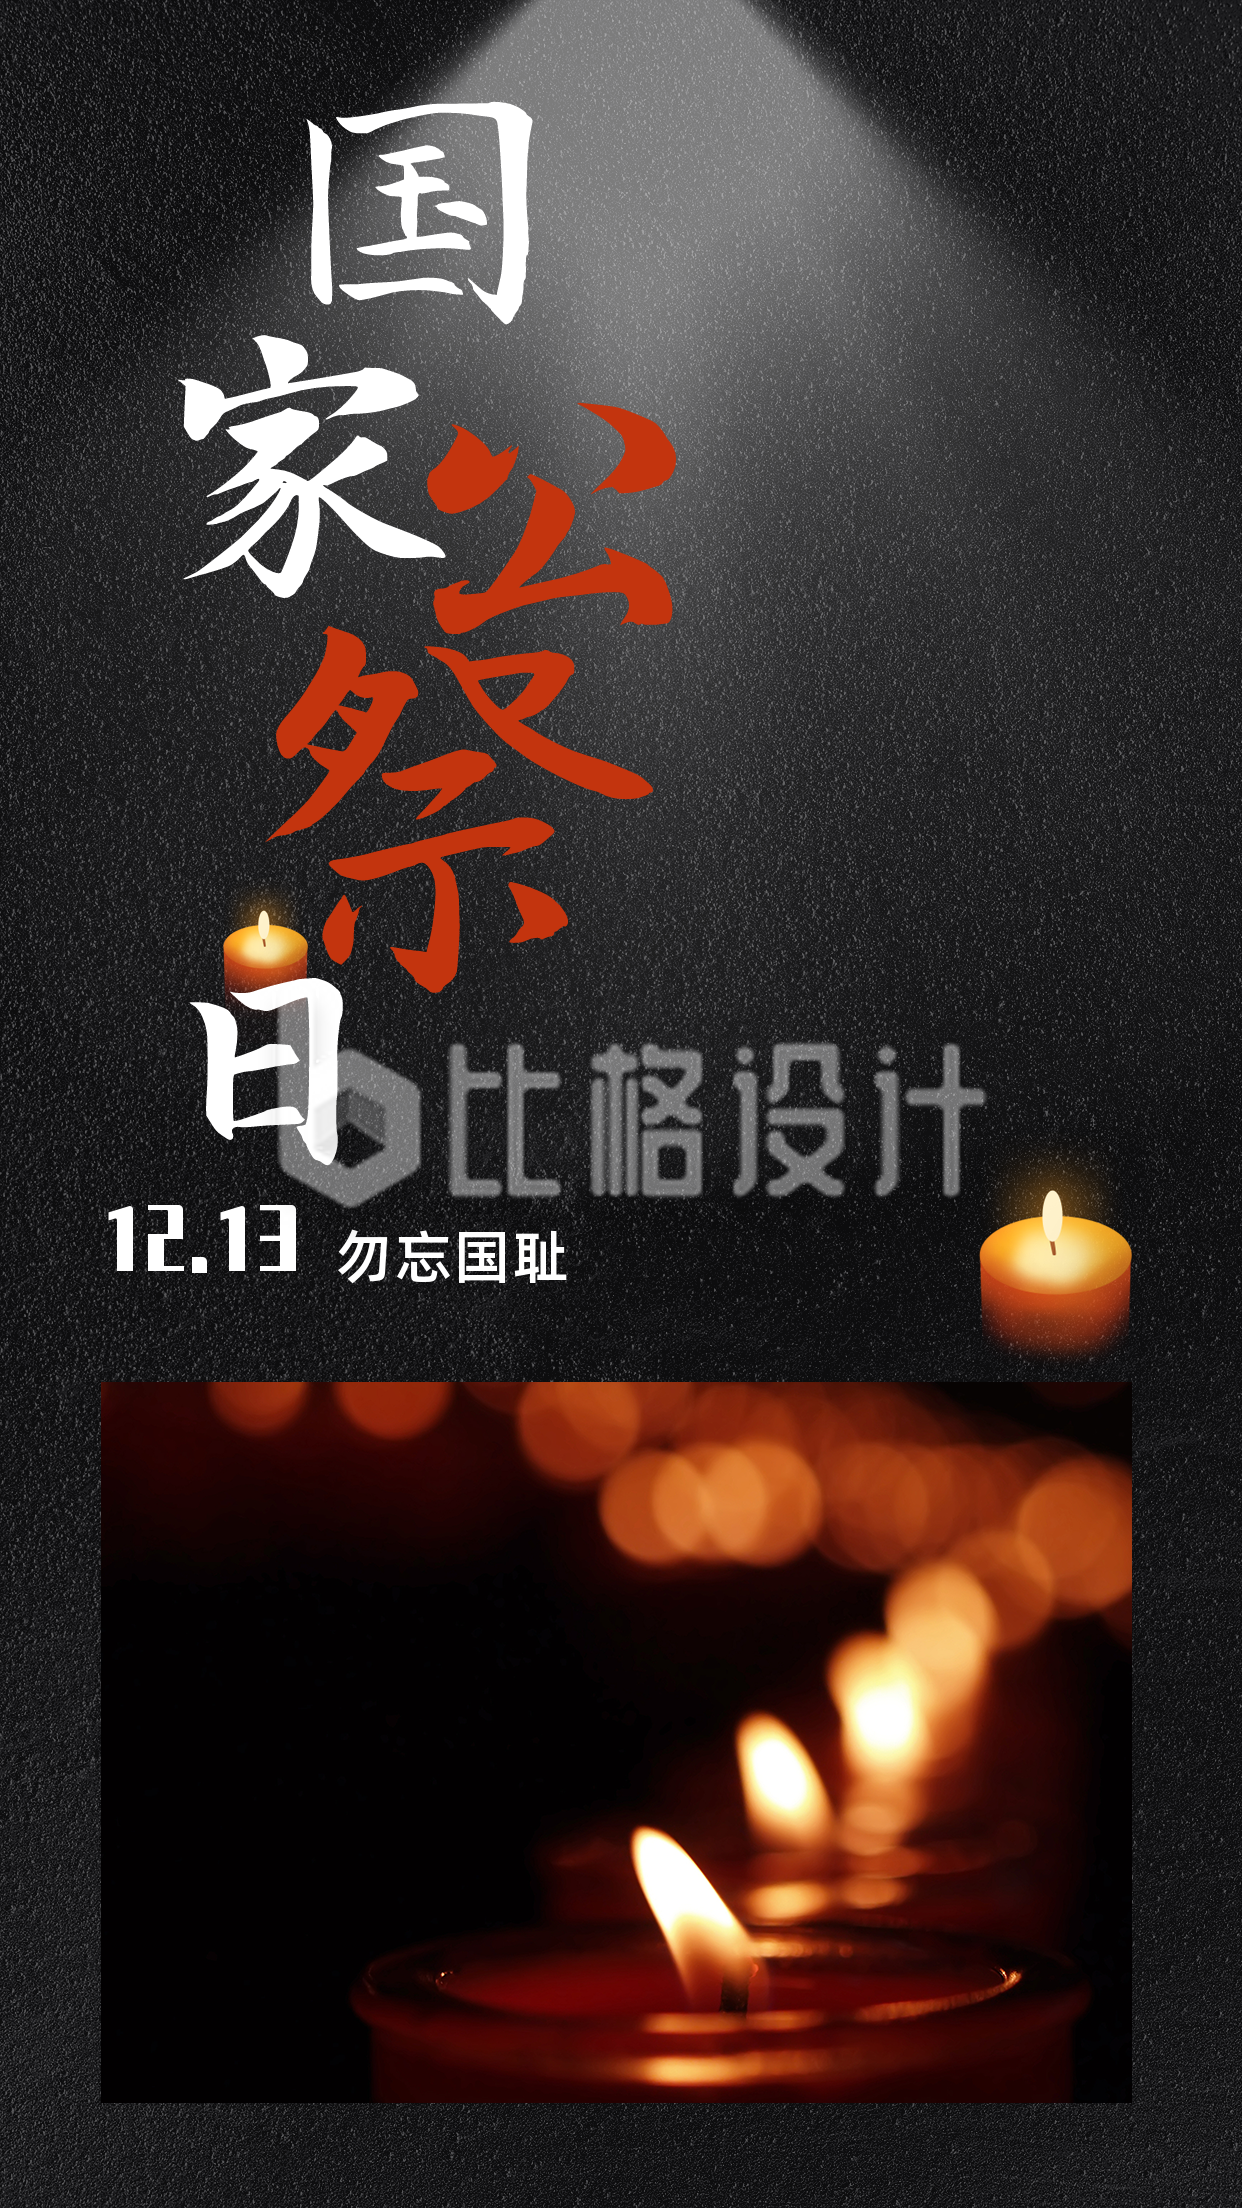 悼念南京大屠杀遇难者国家公祭日竖版配图